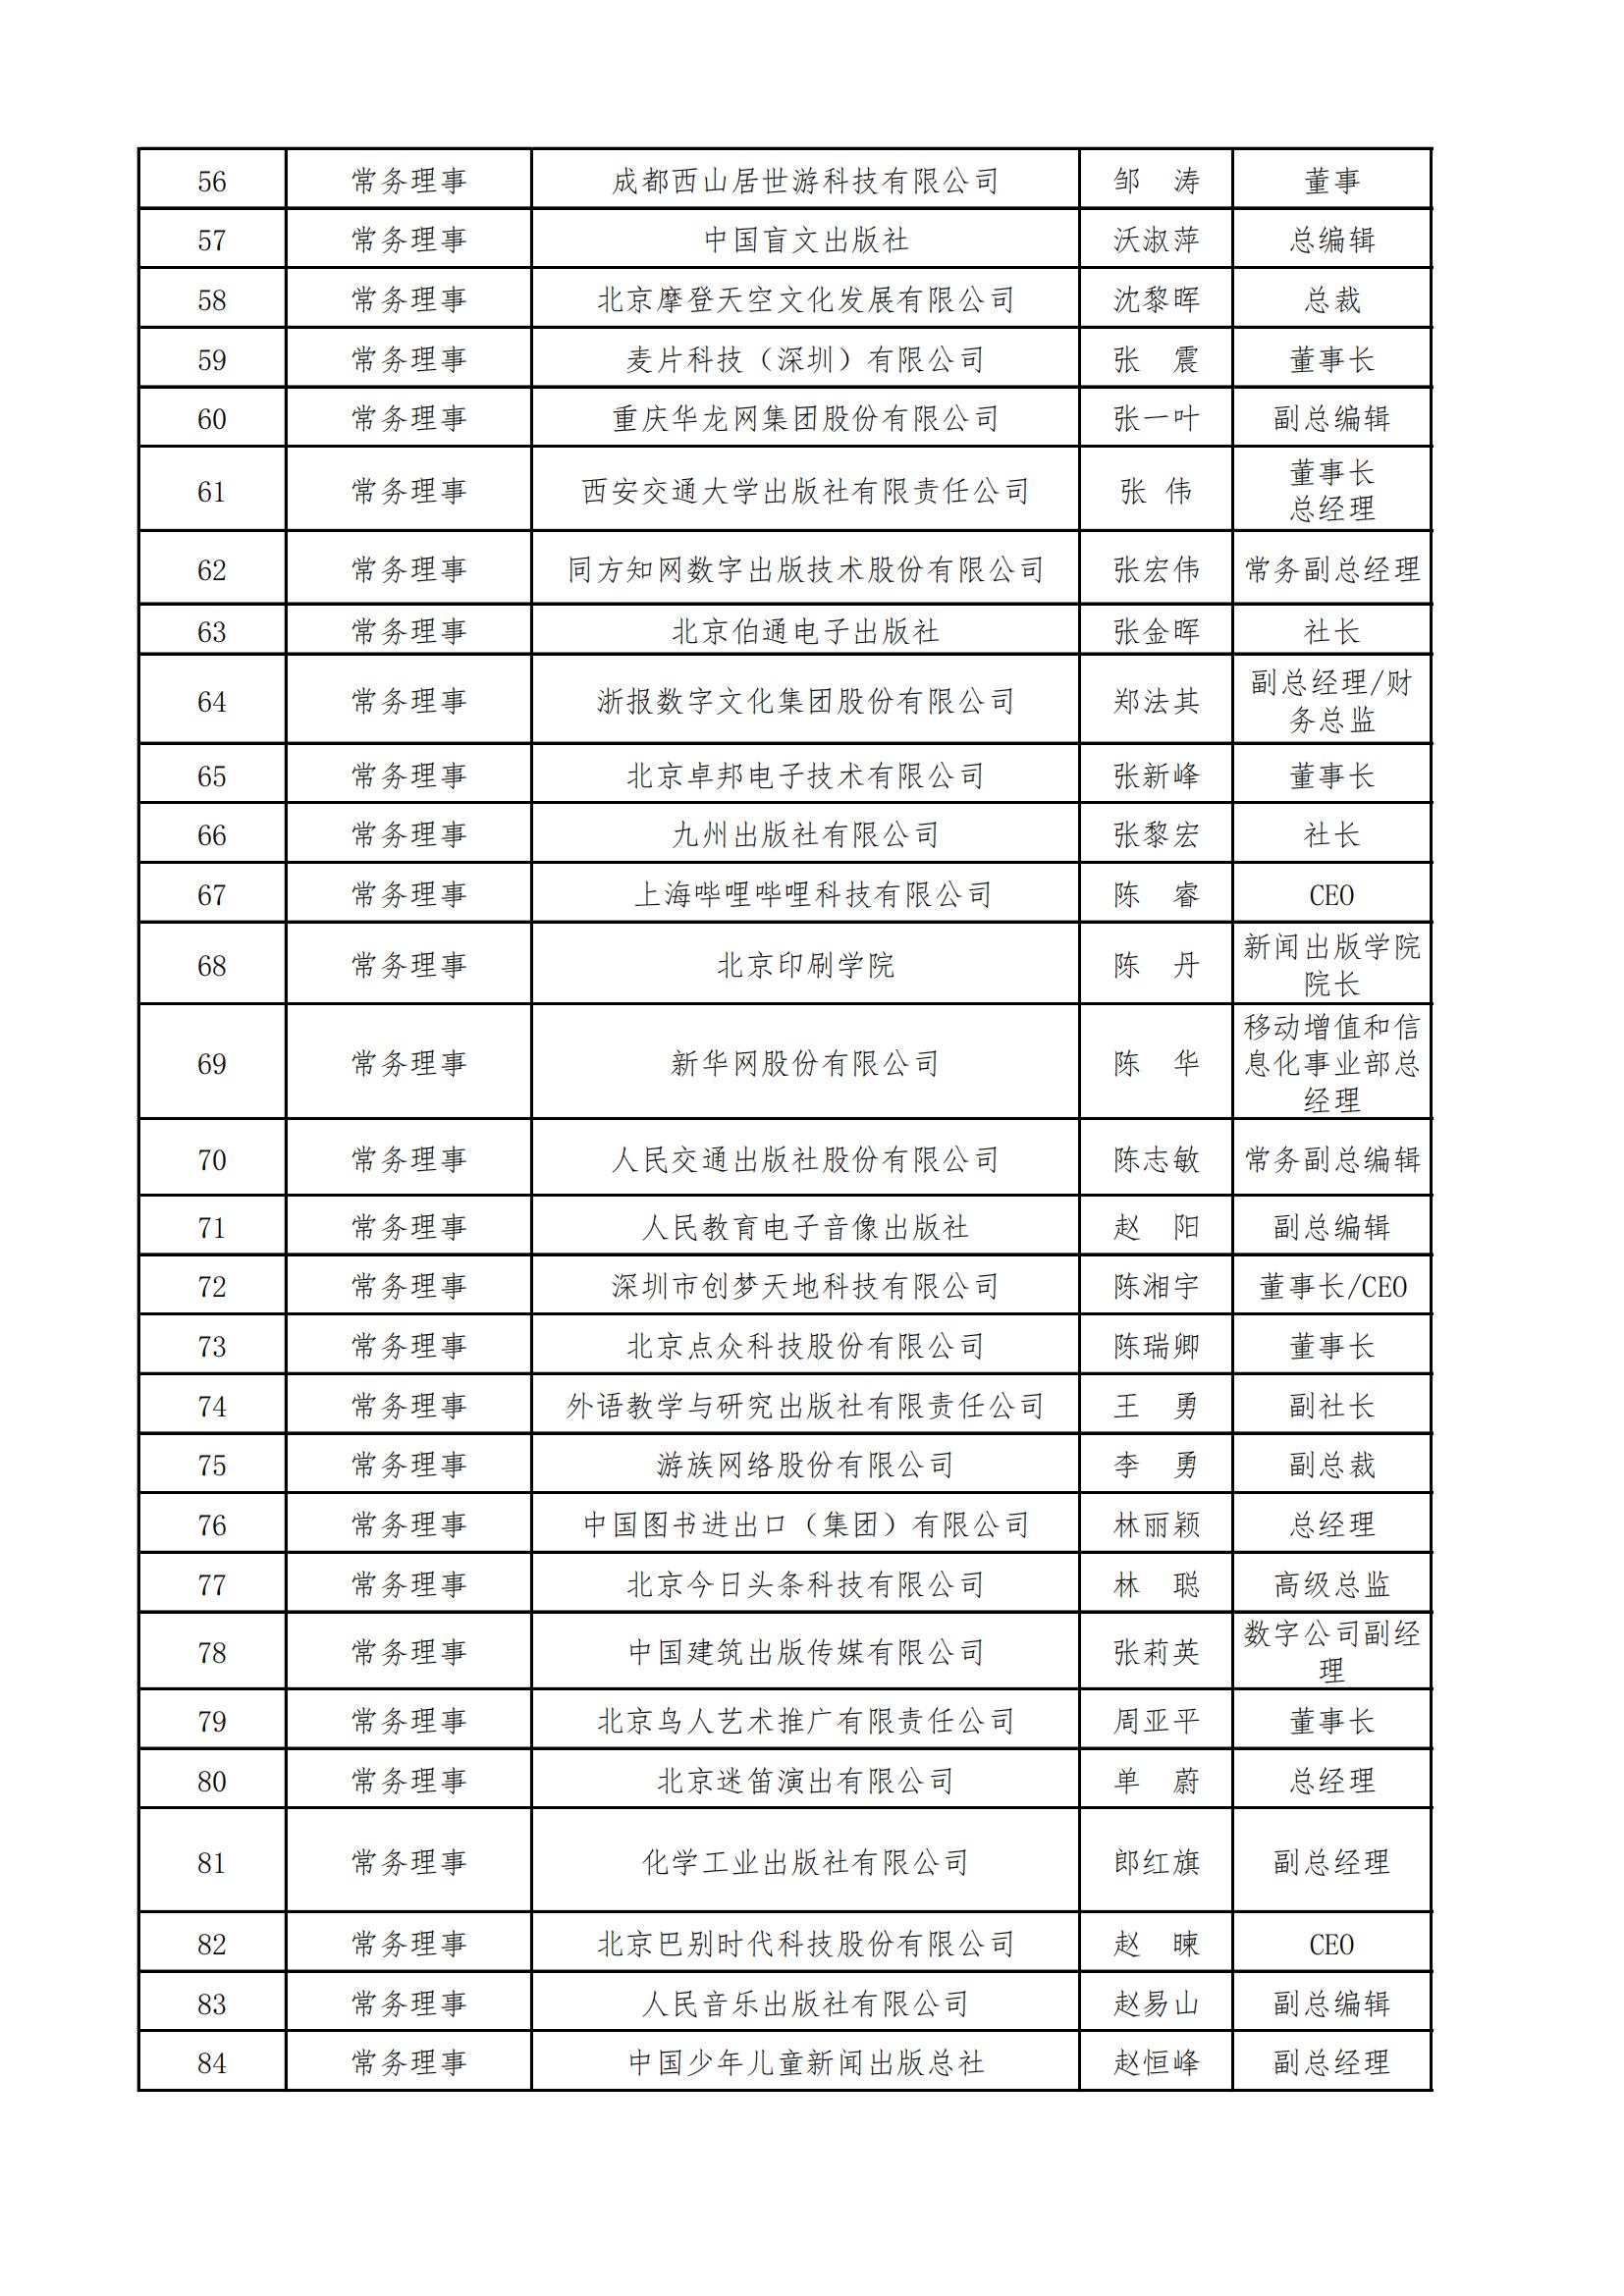 中國音像與數字出版協會第五屆理事會名錄_02.jpg